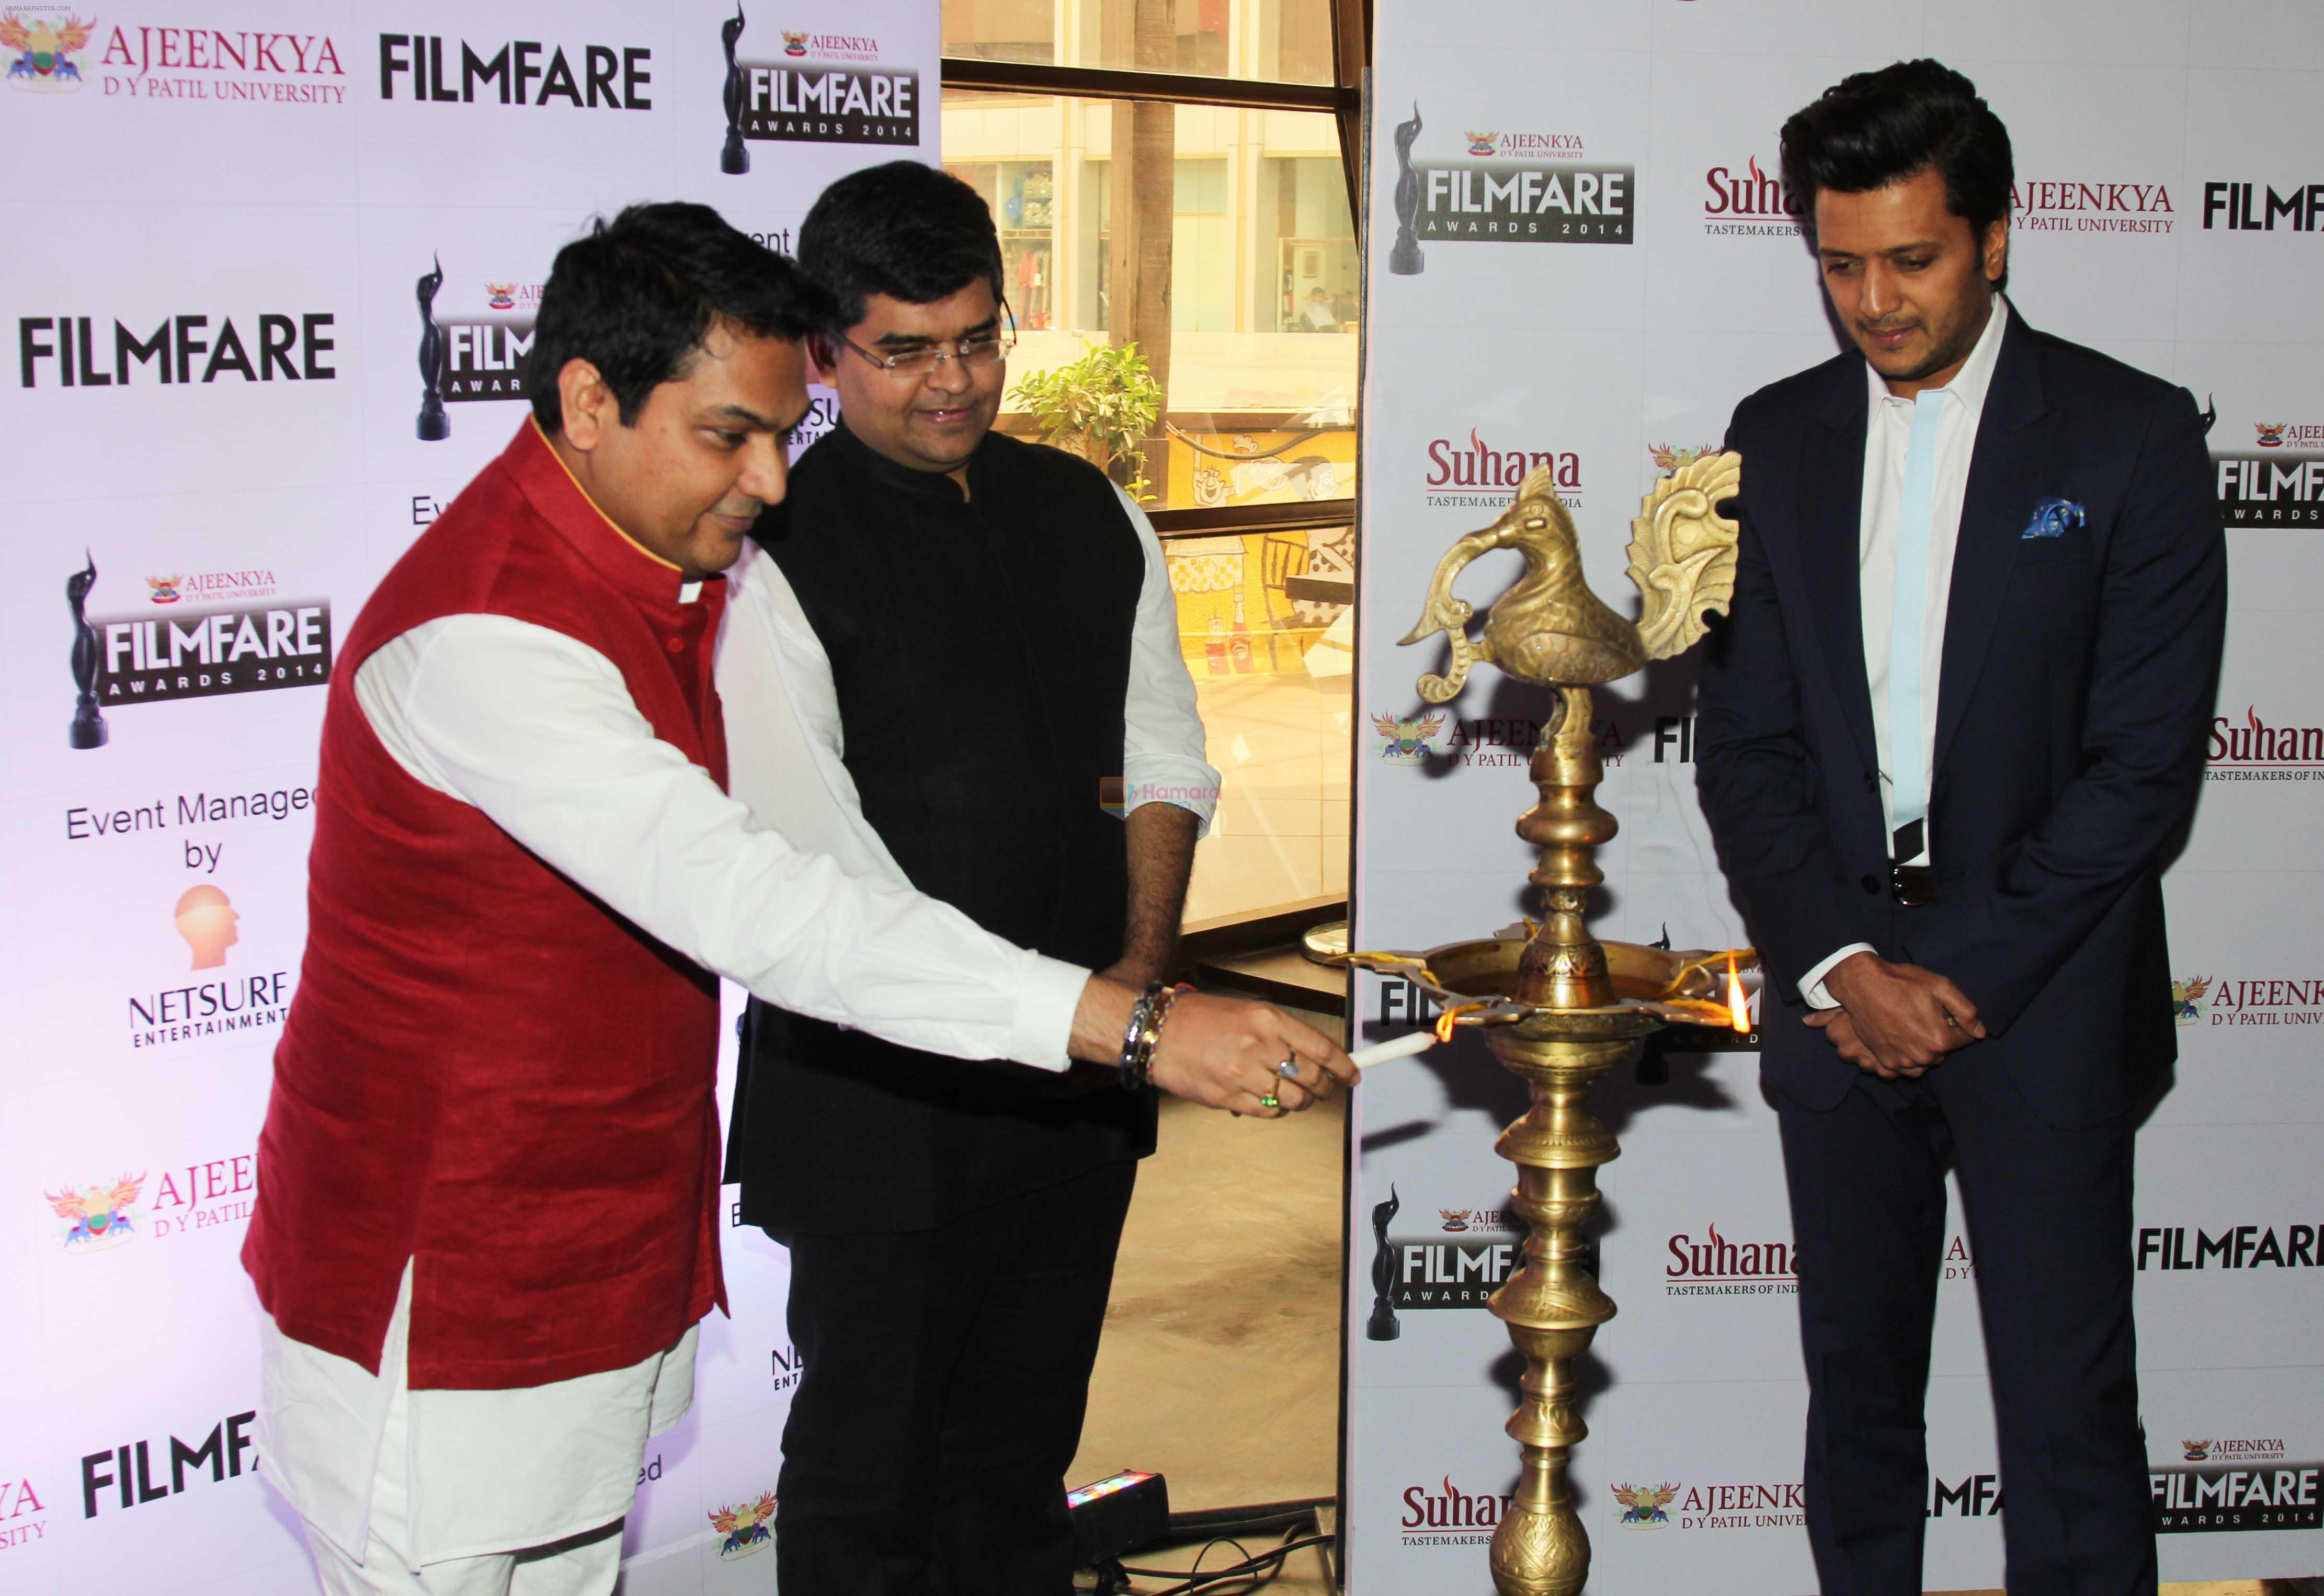 Dr. Ajeenkya DY Patil, Riteish Deshmukh & Jitesh Pillaai at the Launch PC of _Ajeenkya DY Patil University Filmfare Awards 2014_